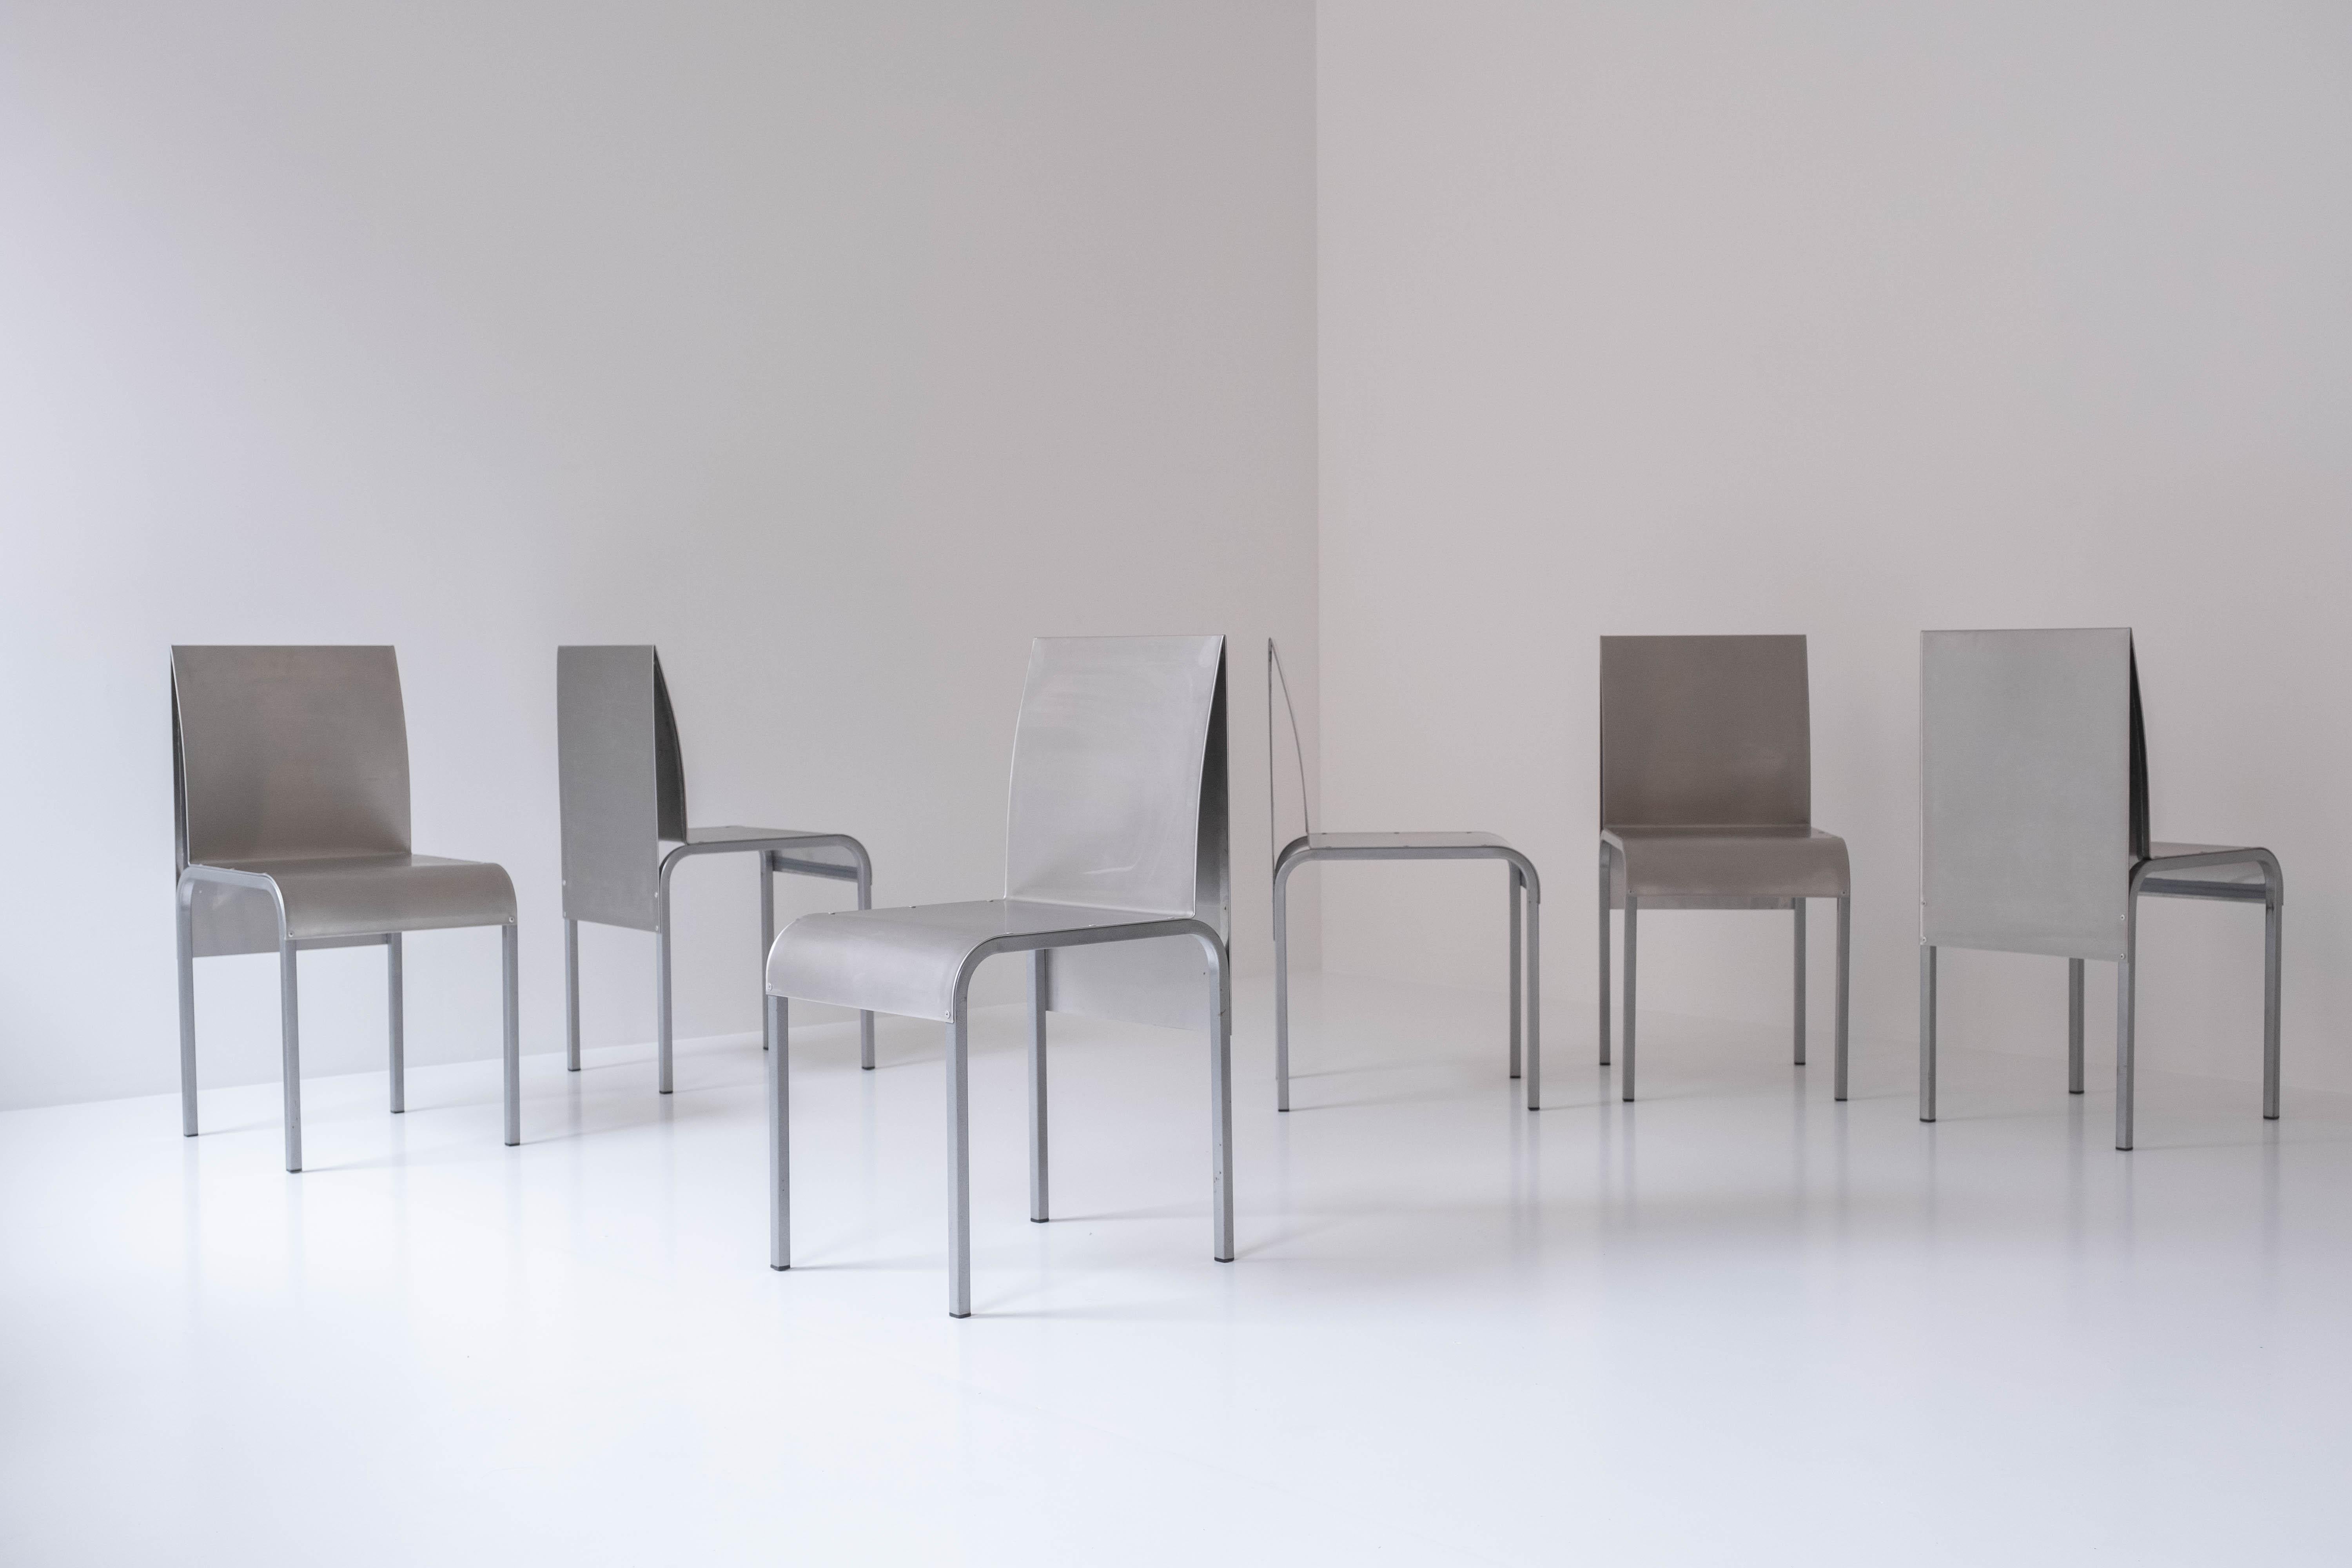 Satz von 6 Esszimmerstühlen aus gebogenem Aluminium, entworfen und hergestellt in Belgien in den 1980er Jahren. Diese Stühle haben Metallbeine und weisen kleinere Abnutzungserscheinungen durch Alter und Gebrauch auf.